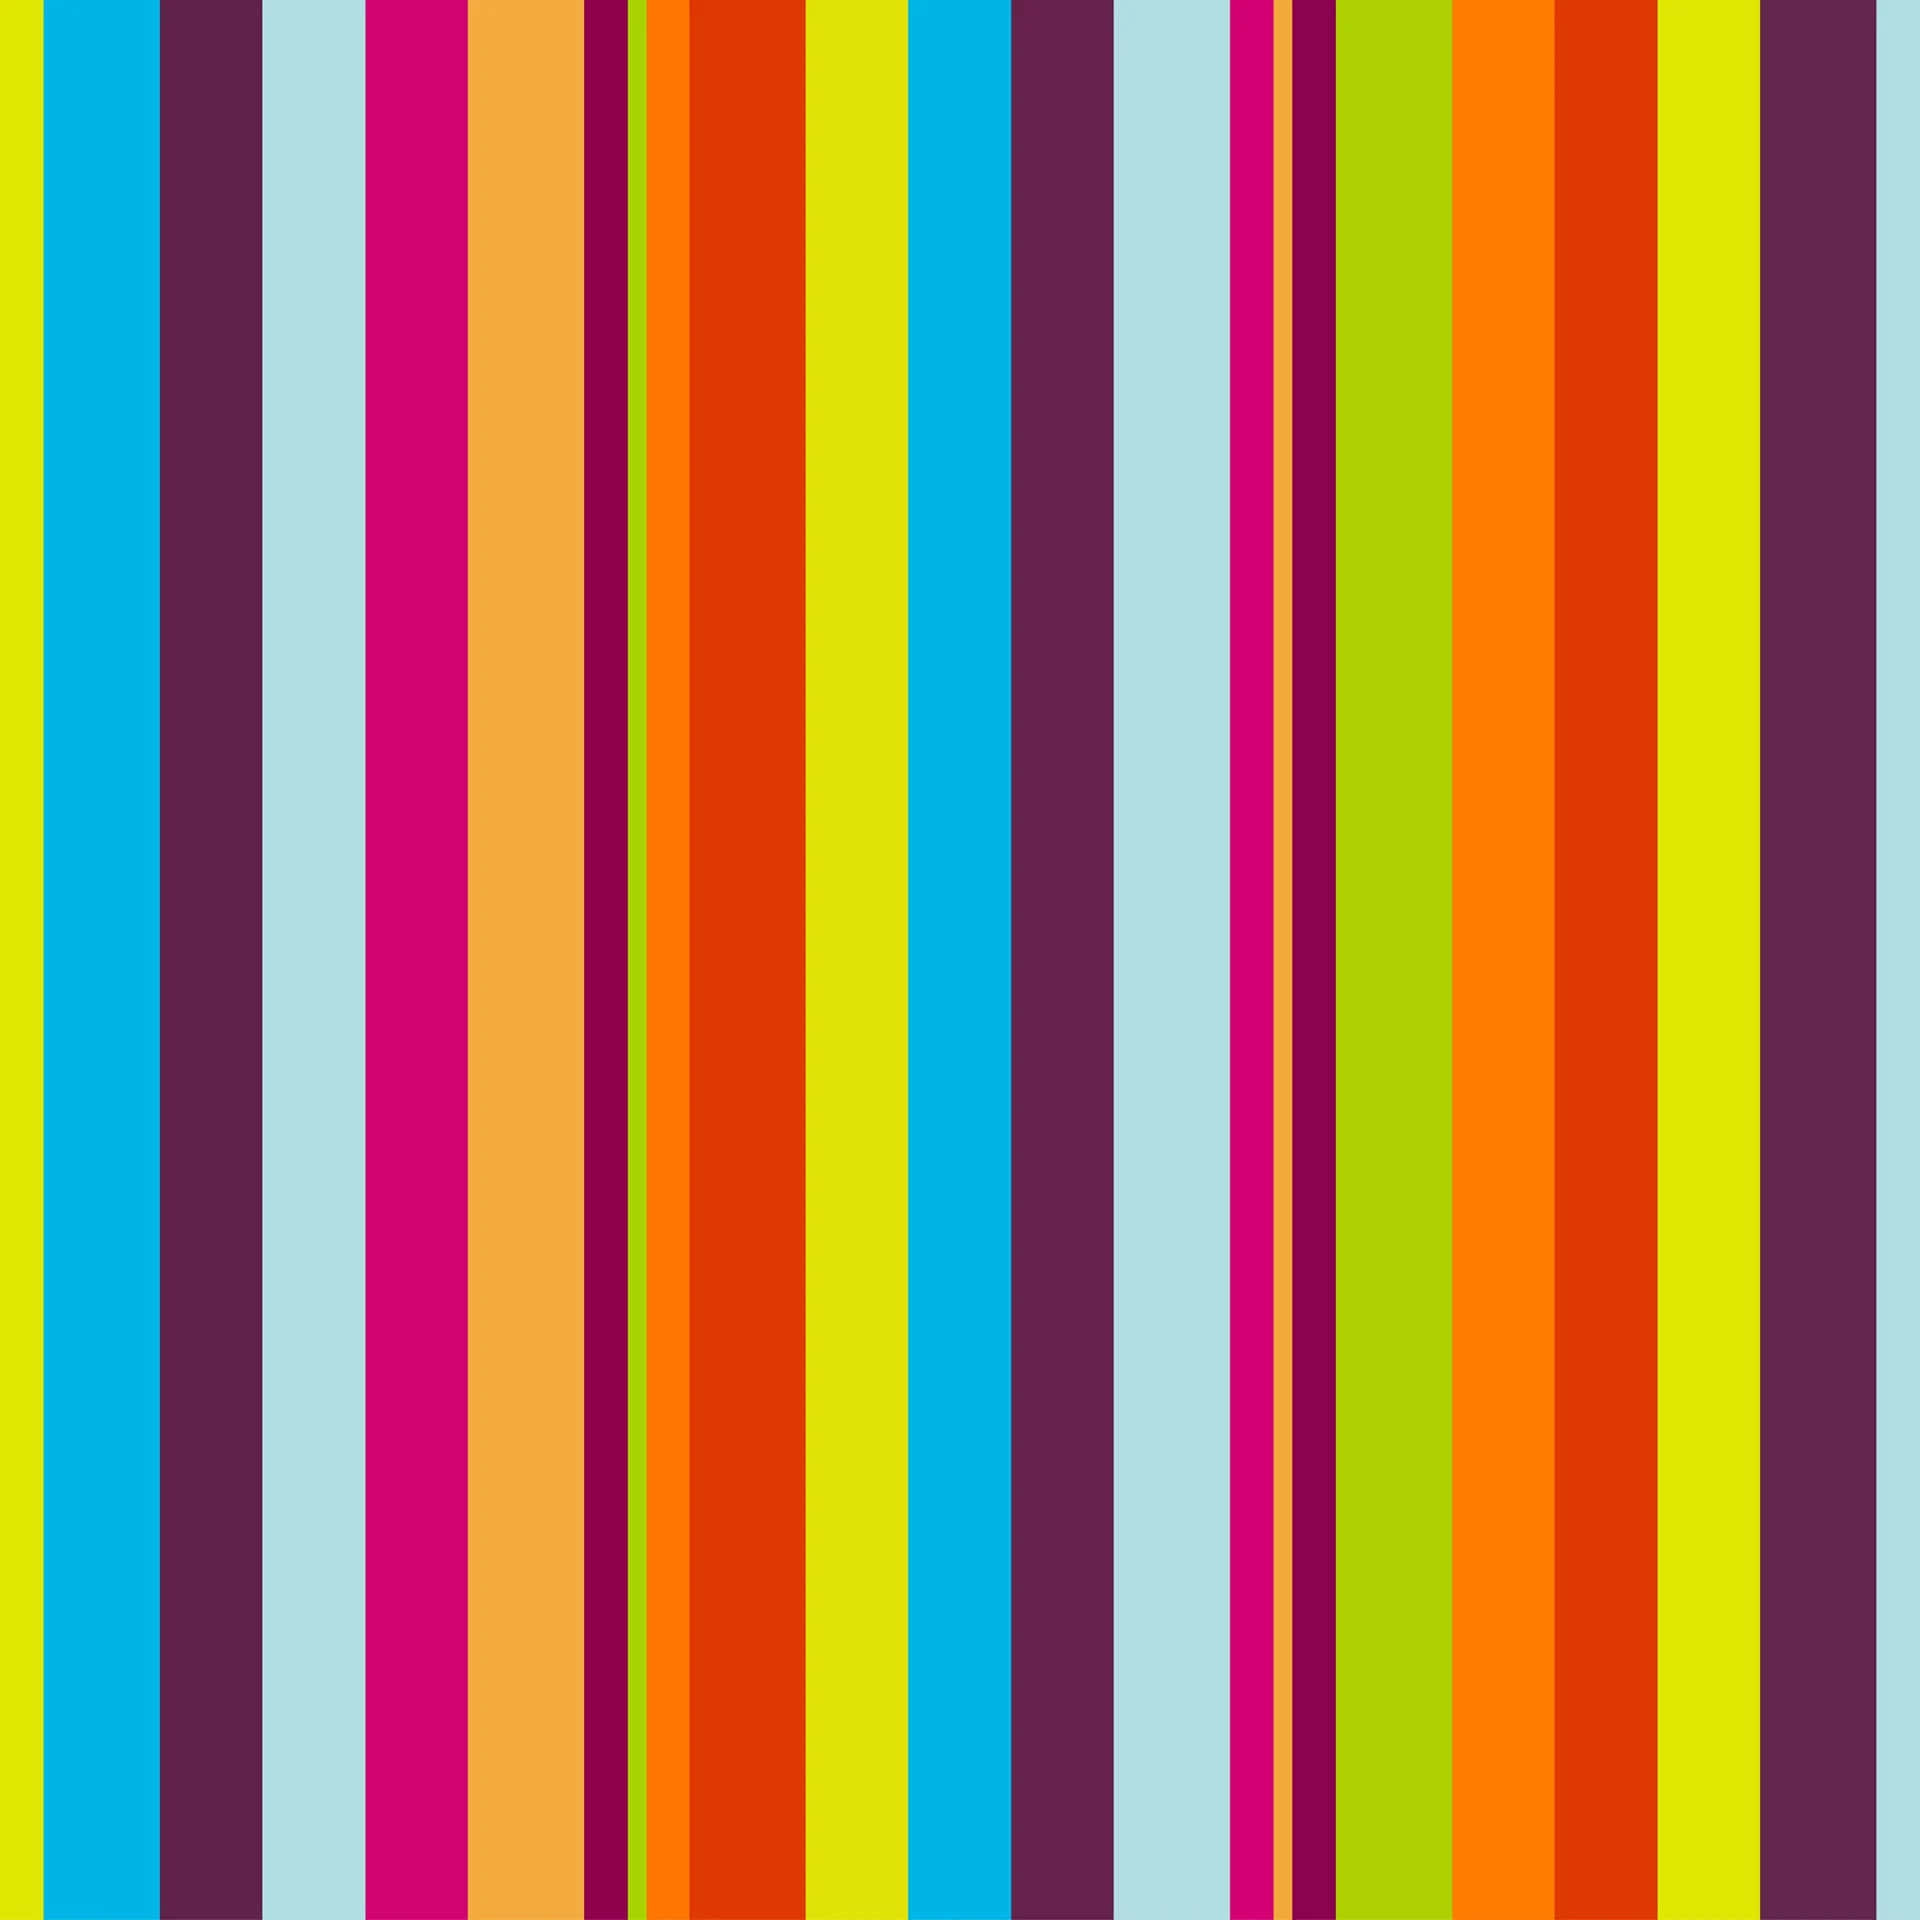 Caption: Modern Stripes Background Pattern